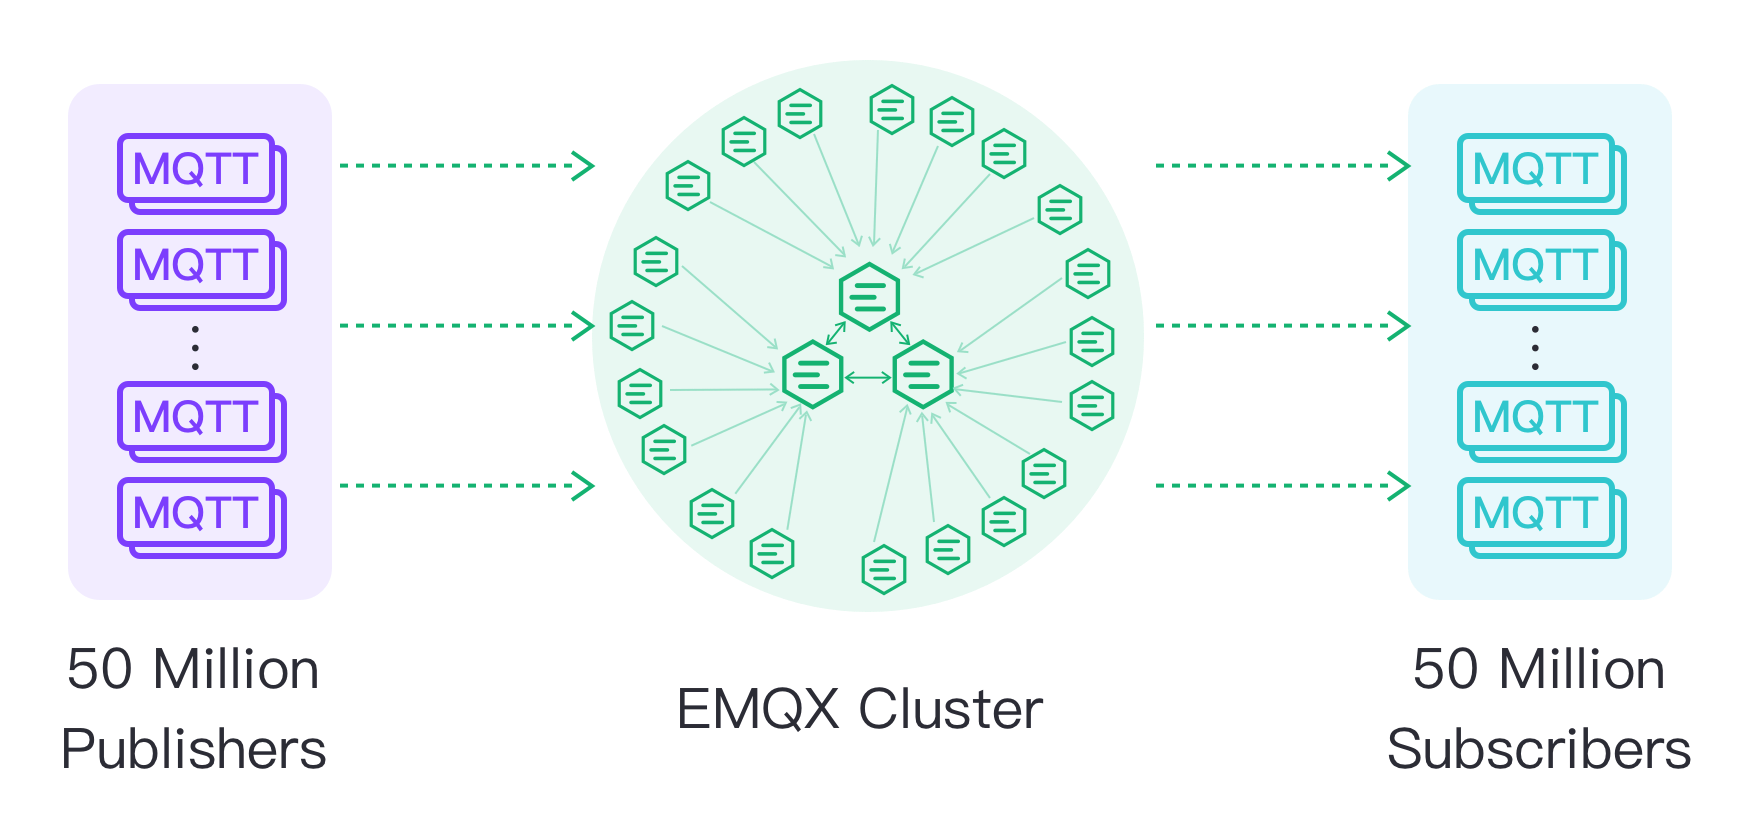 100M Pub/Sub - EMQX Cluster